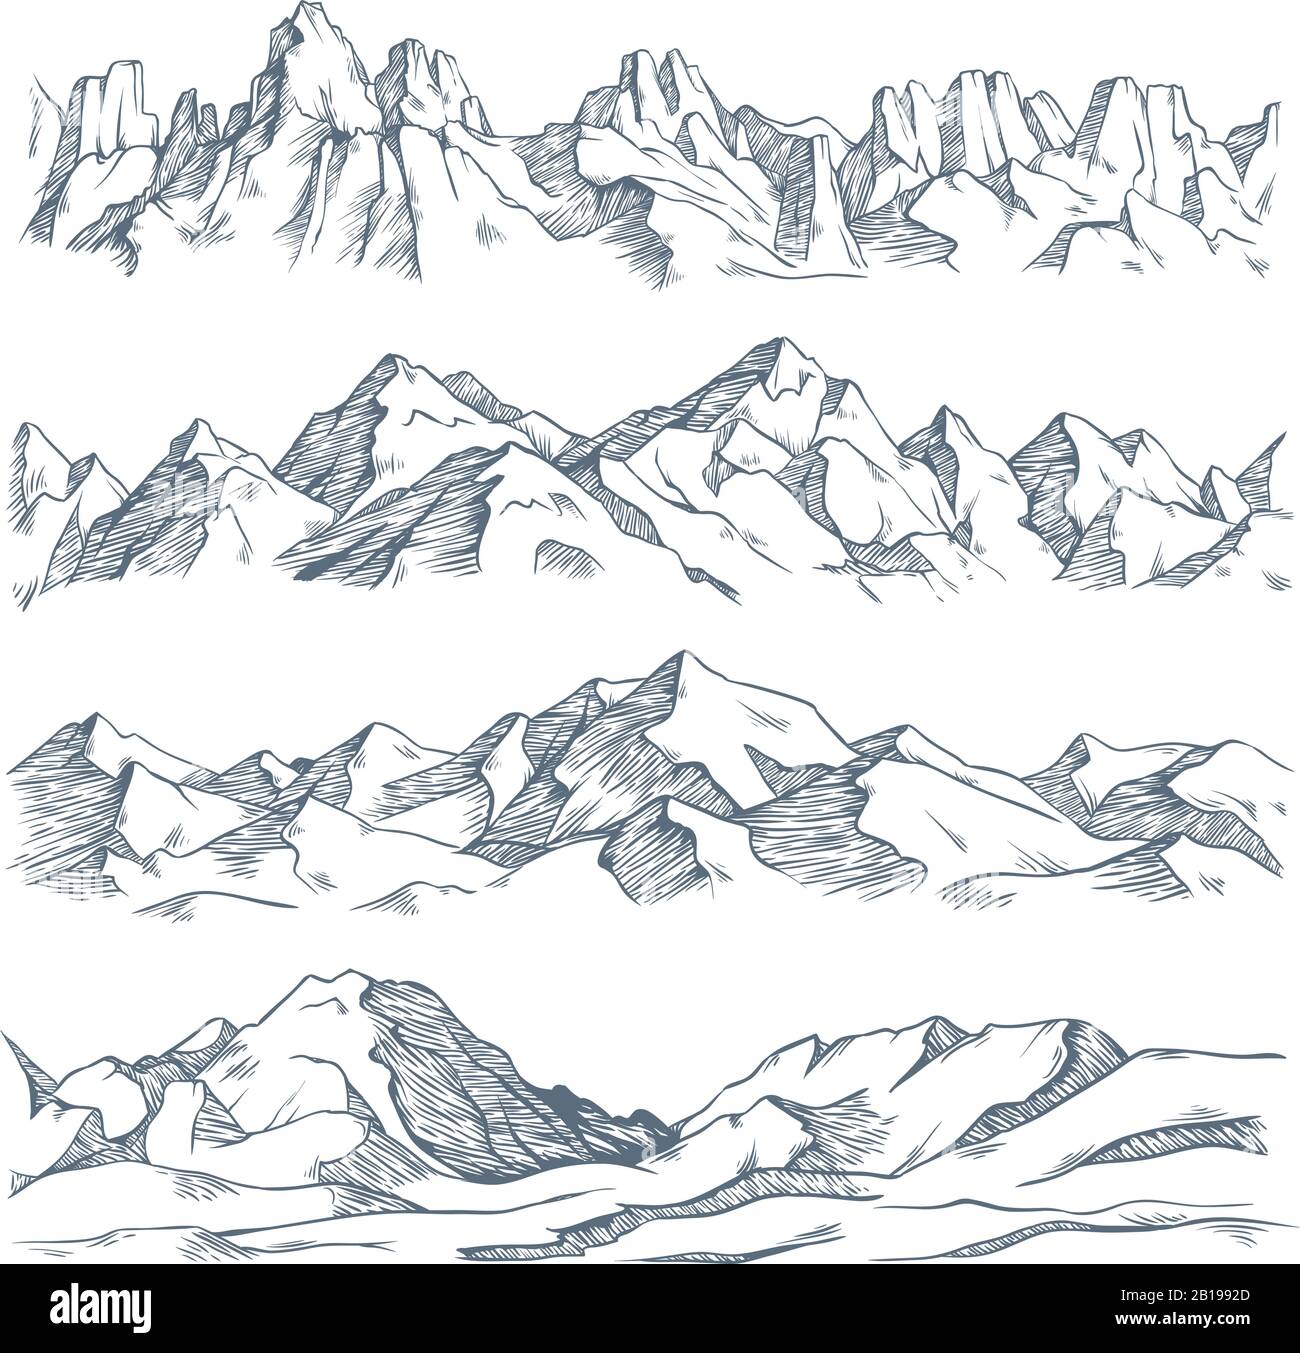 Landschaftsgravur der Berge. Klassische handgezeichnete Skizze zum Wandern oder Klettern auf den Bergen. Vektorgrafiken der Natur im Hochland Stock Vektor